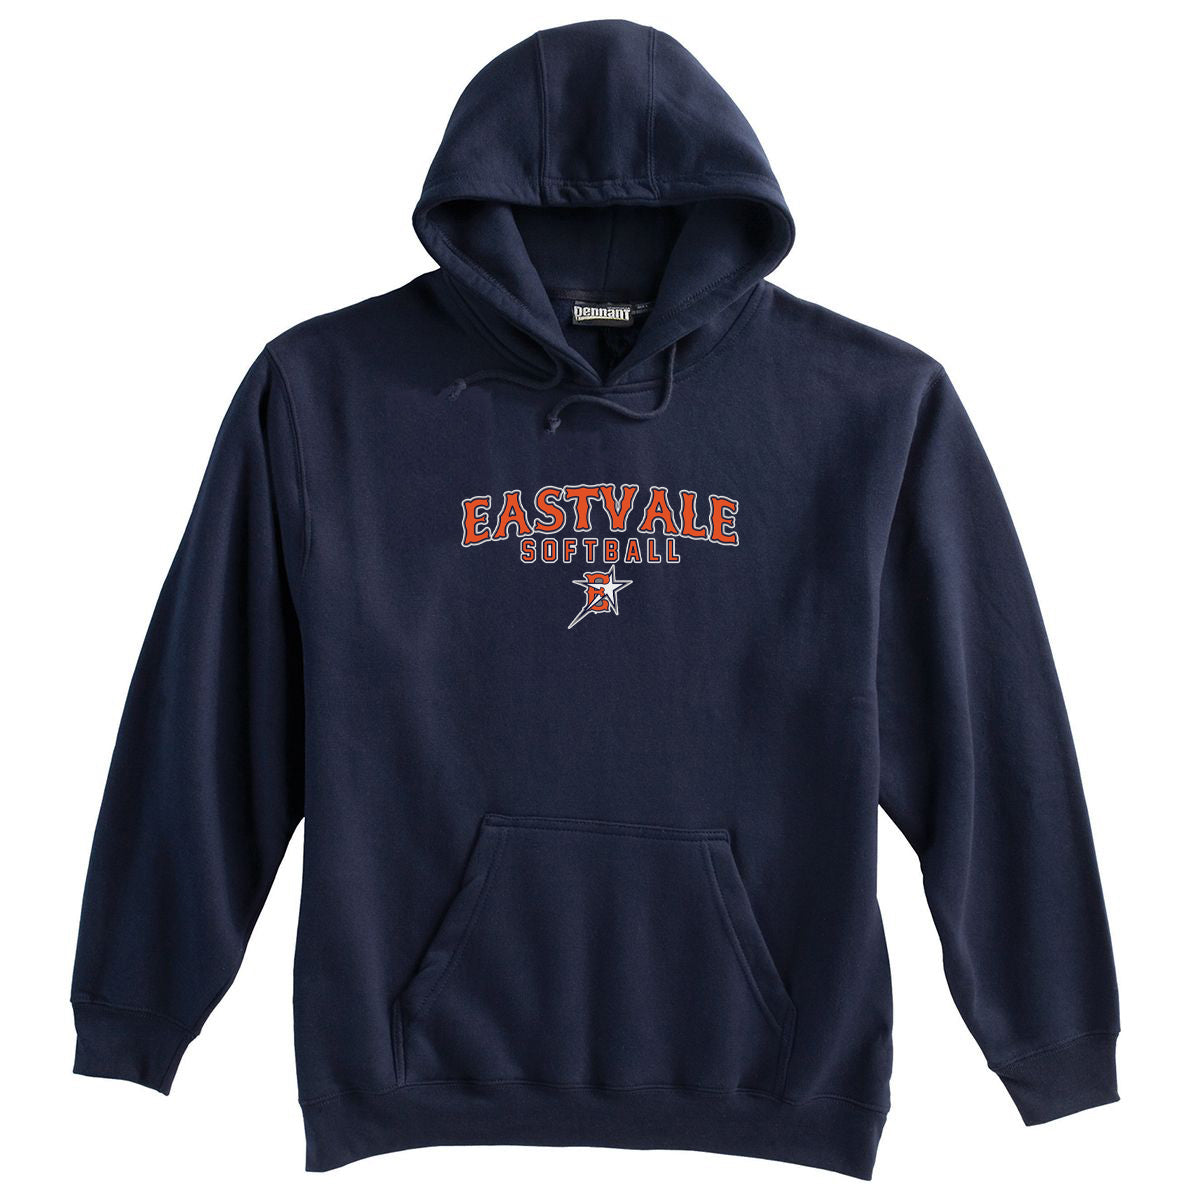 Eastvale Girl's Softball Sweatshirt